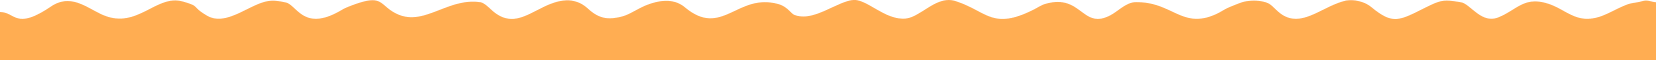 bcateam orange banner